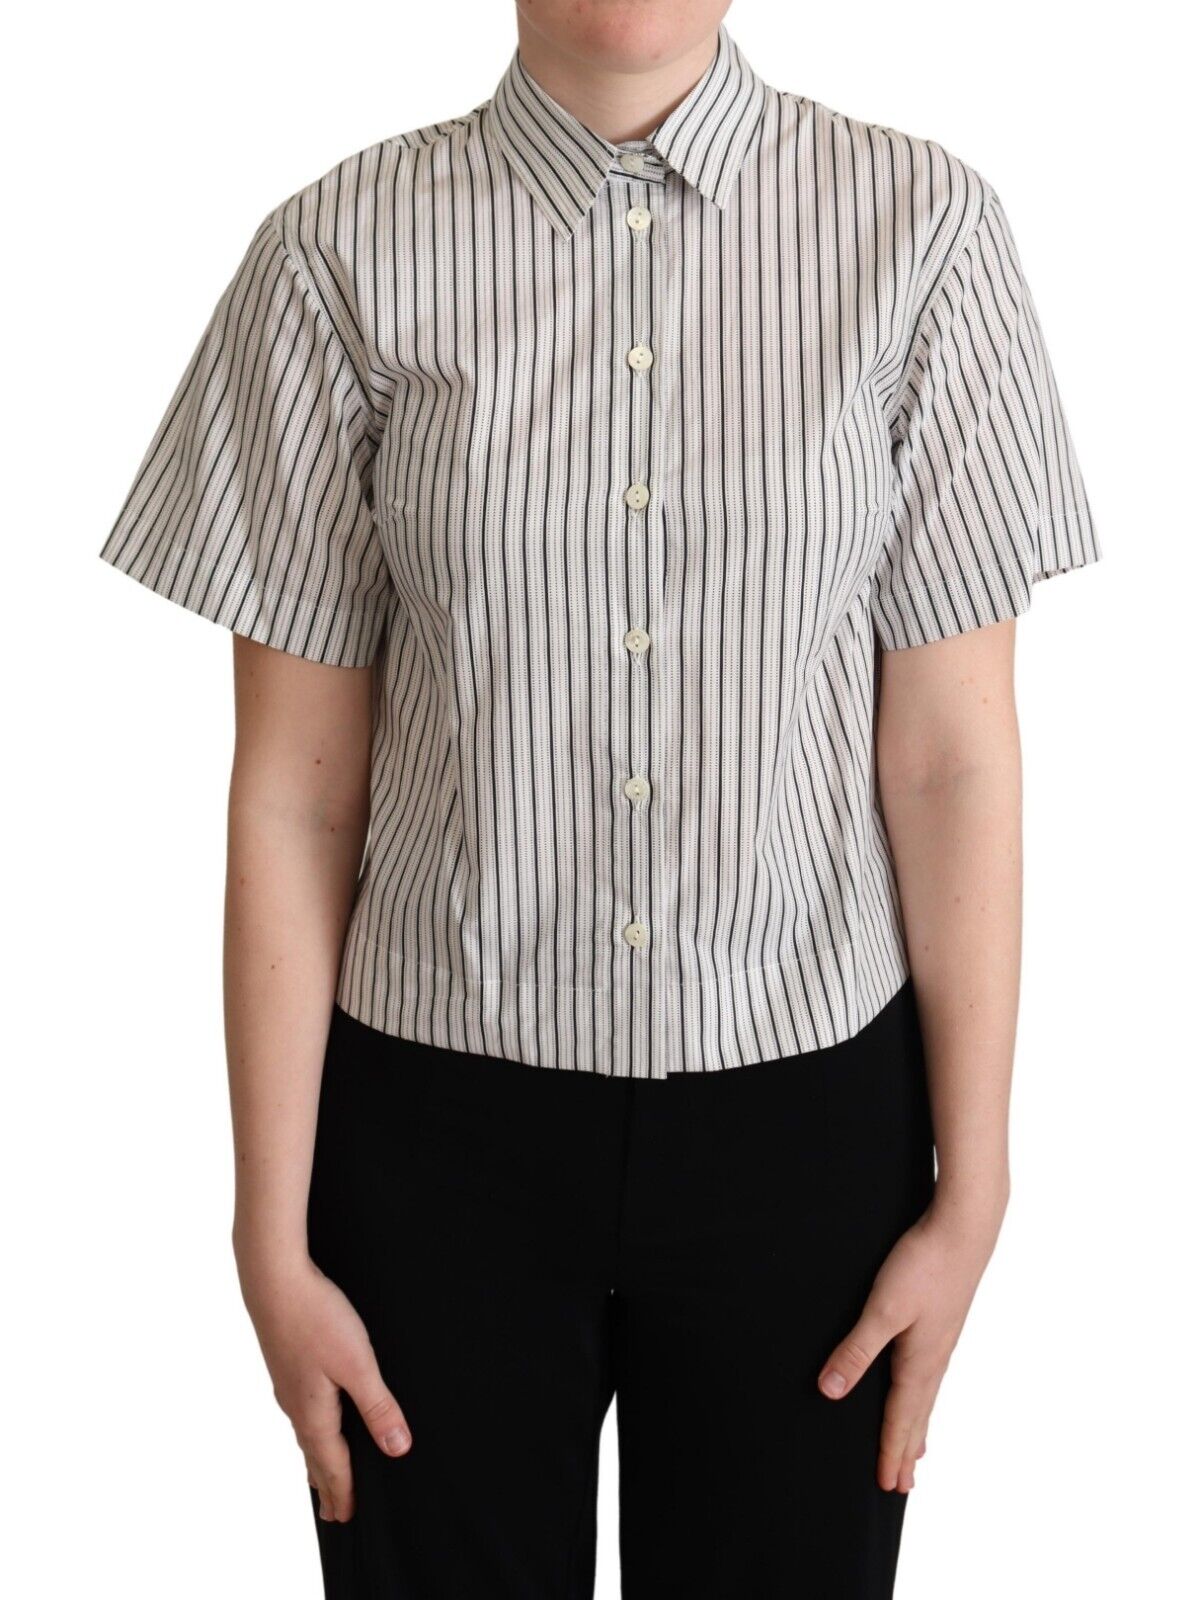 DOLCE & GABBANA Топ Бело-черная полосатая рубашка с воротником IT40 / US6 / S Рекомендуемая розничная цена 600 долларов США